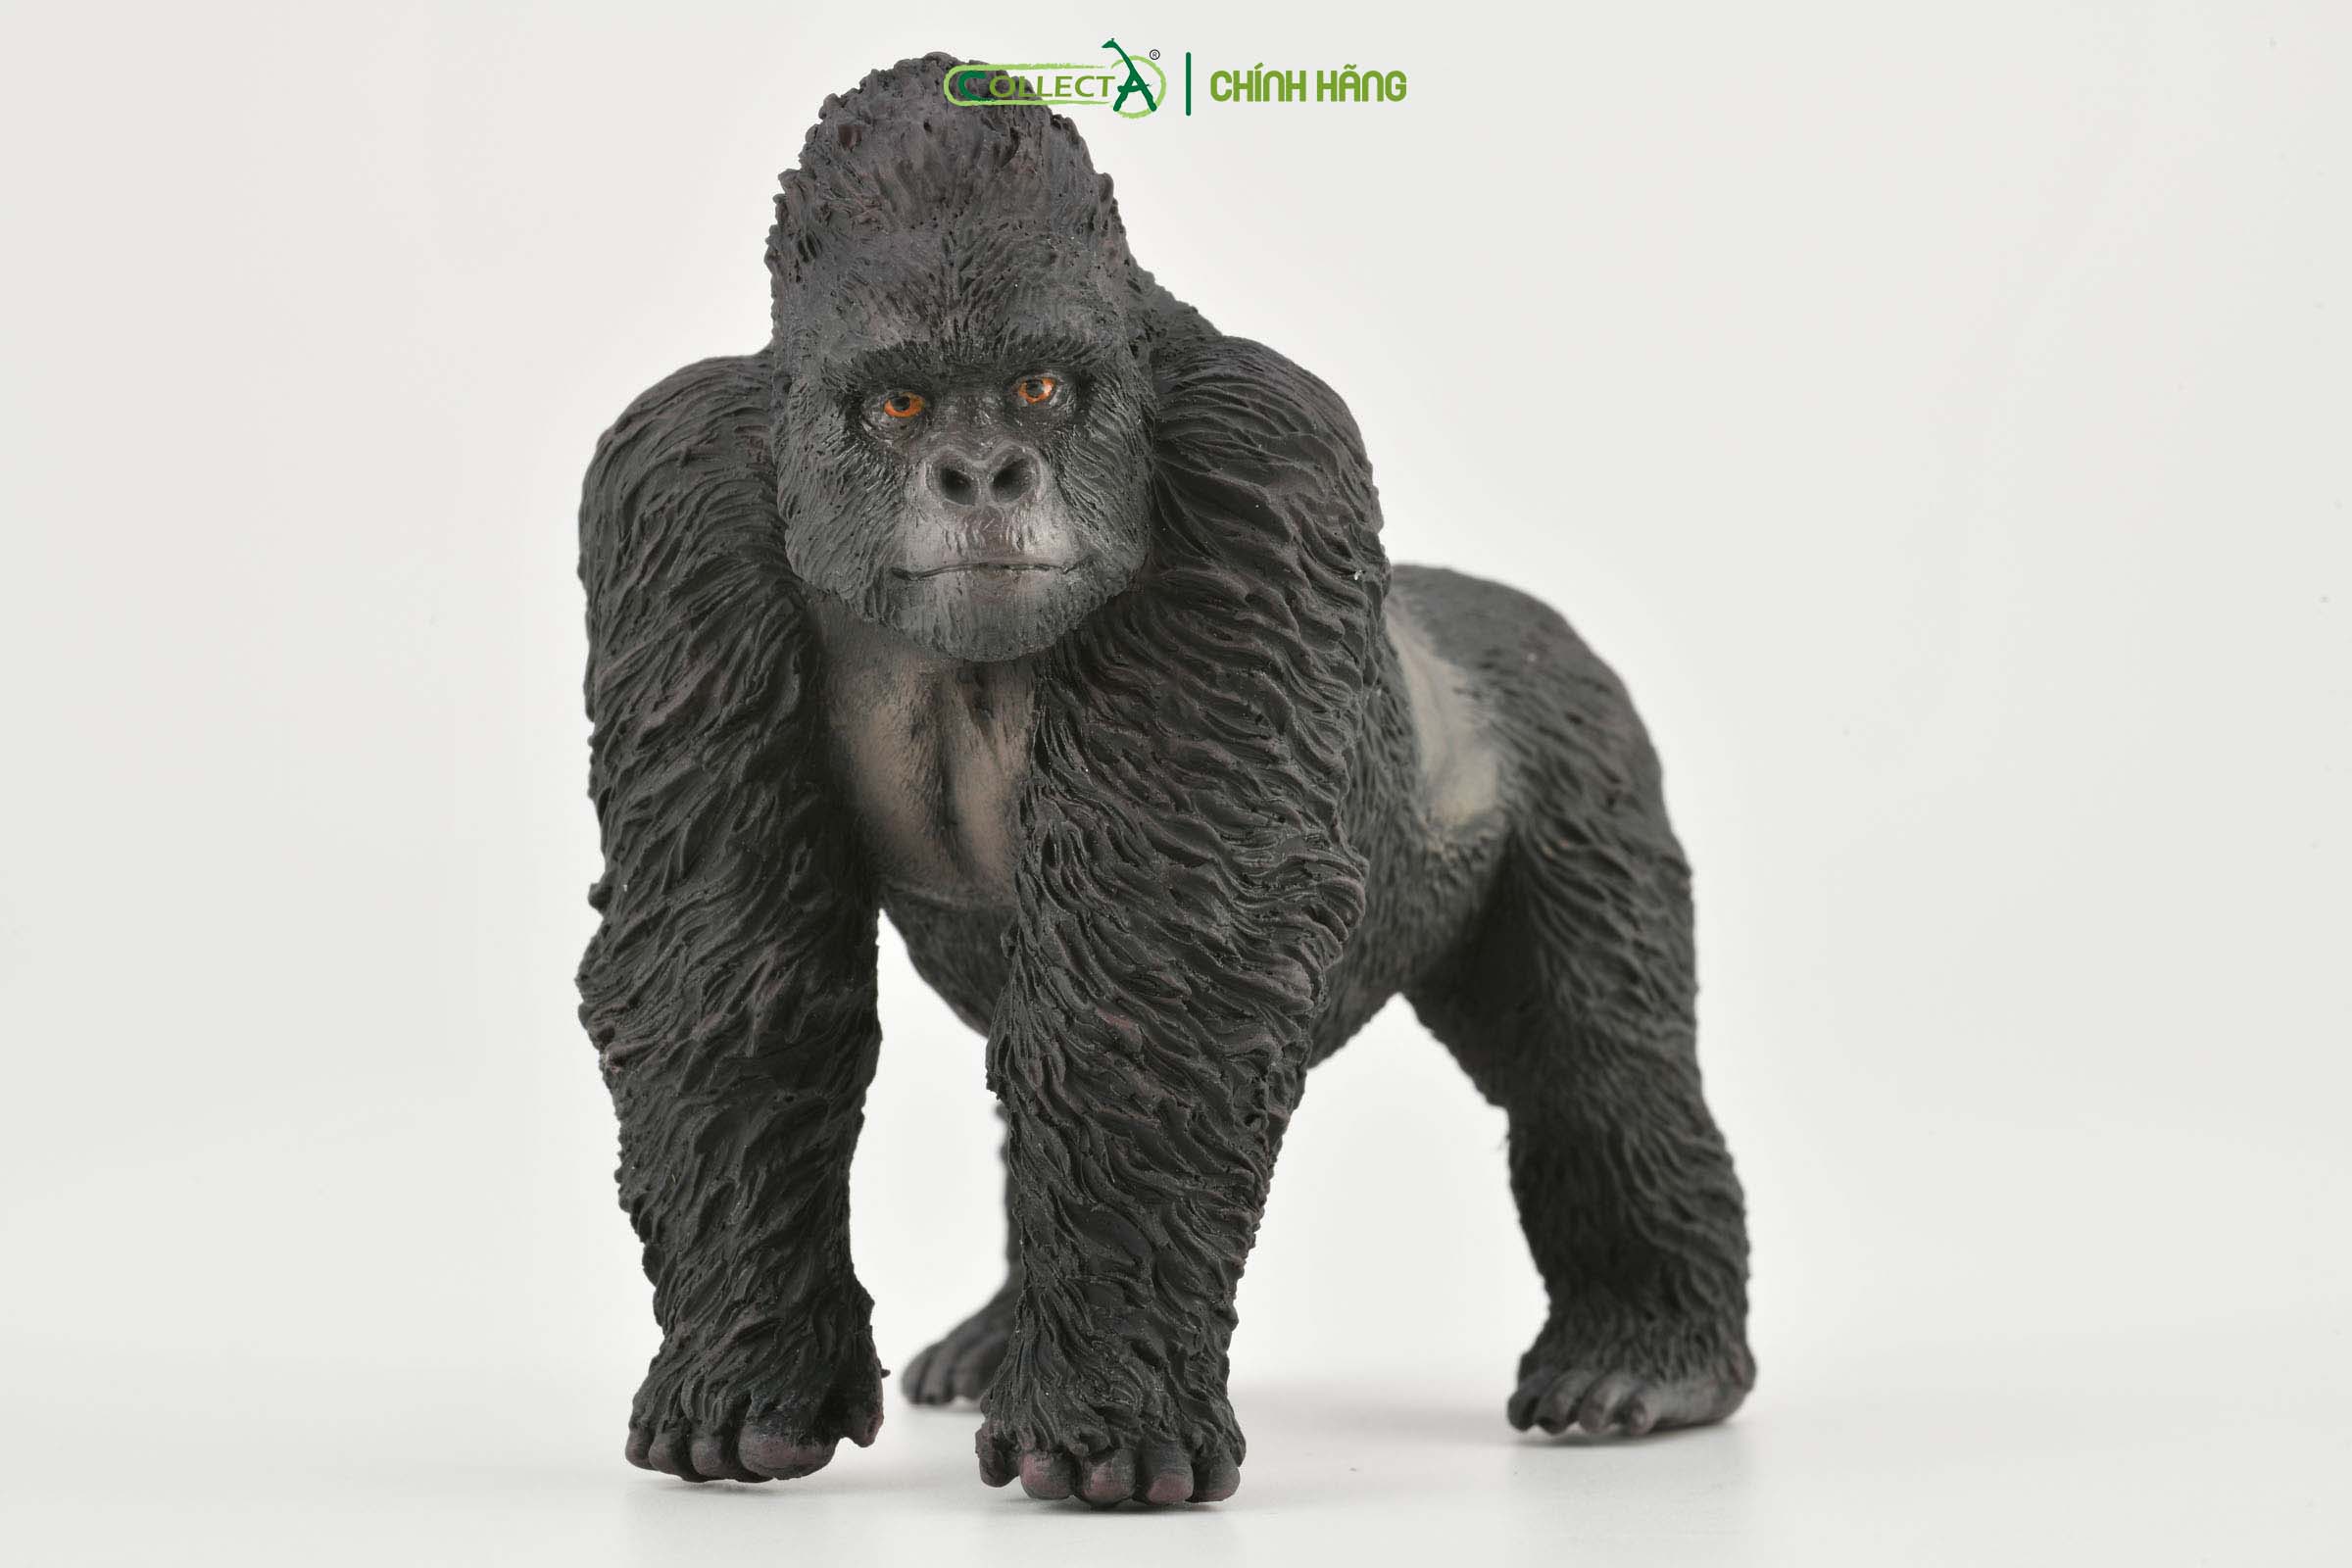 Mô hình thu nhỏ: Khỉ Đột Núi - Mountain Gorilla , hiệu: CollectA, mã HS 9651020[88899] -  Chất liệu an toàn cho trẻ - Hàng chính hãng